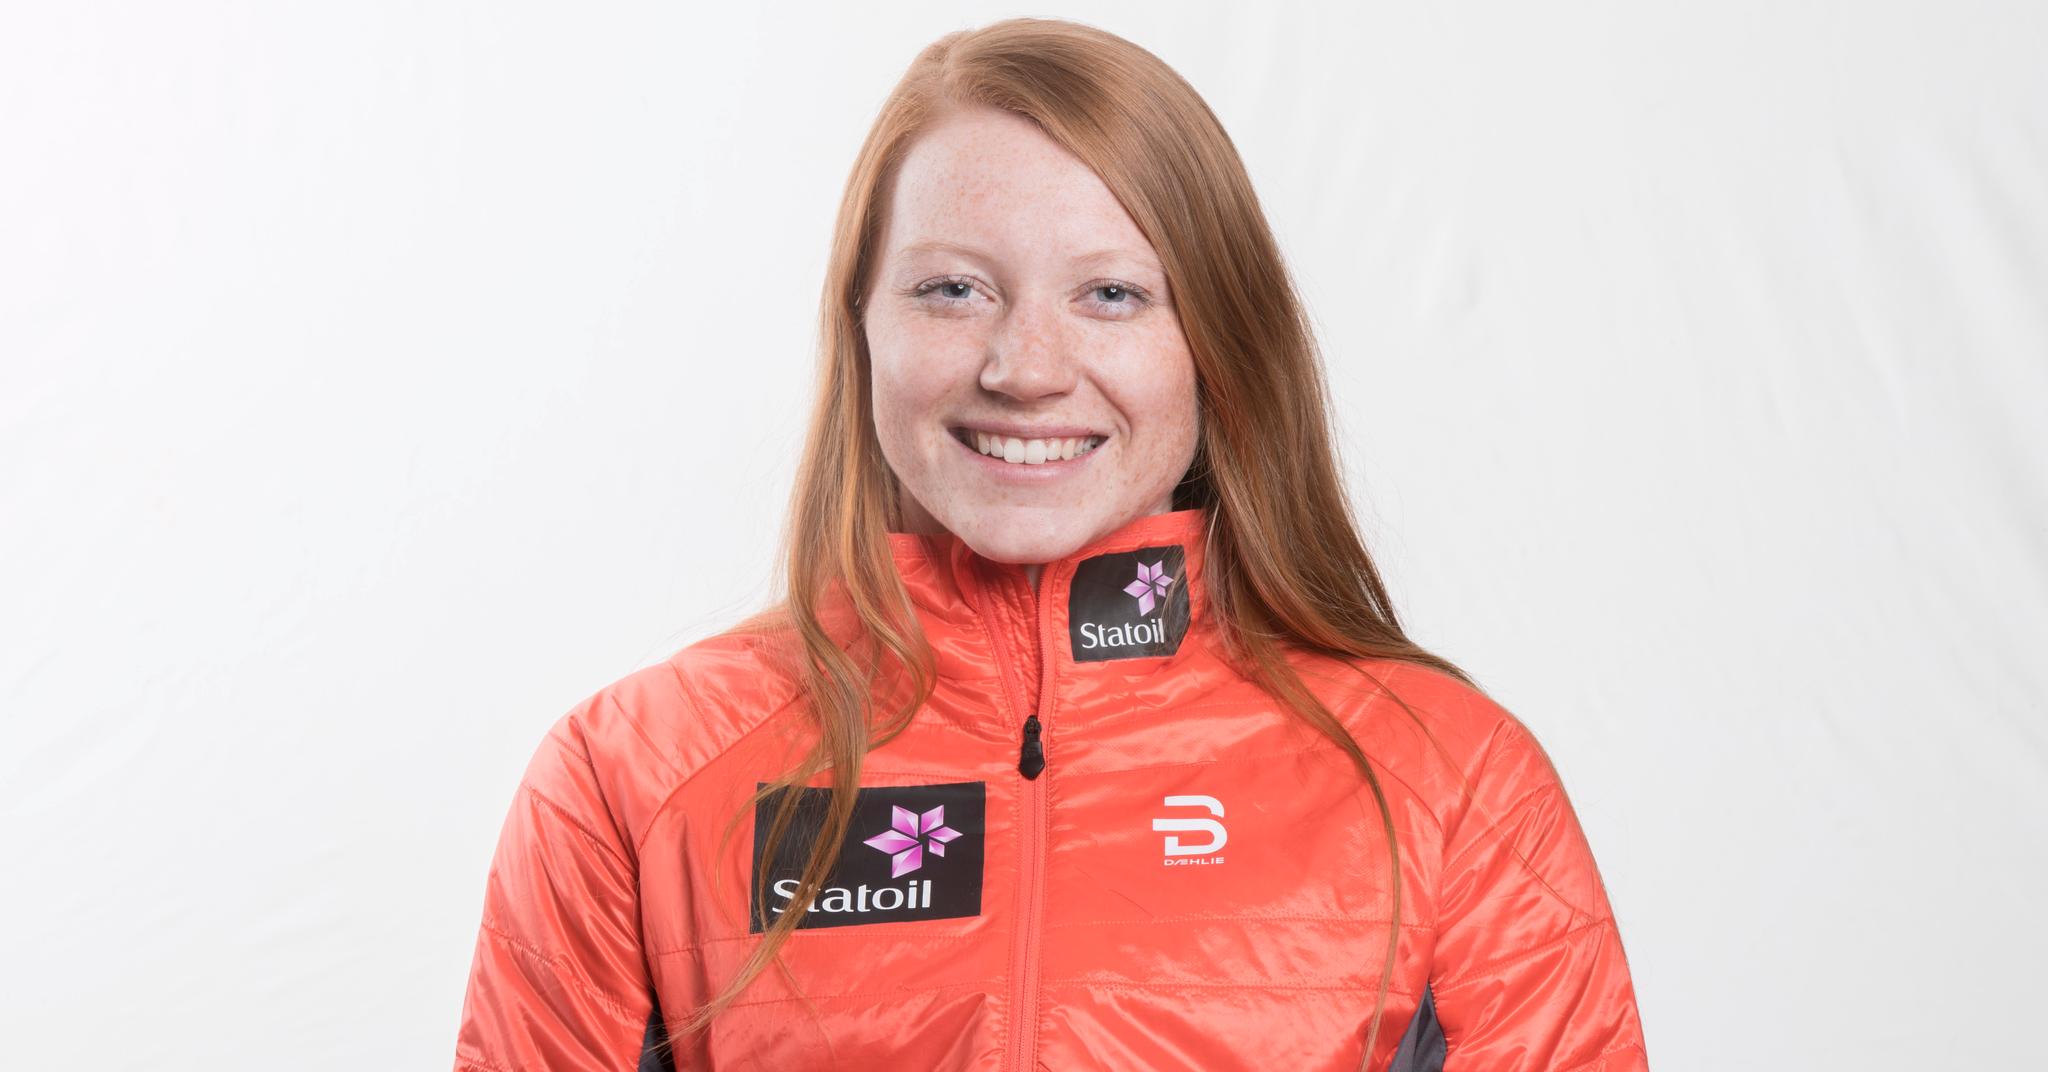 FREMADSTORMENDE: Lone Johansen (19) fra Melhus ble vraket til fjorårets junior-VM. Torsdag fikk hun betalt for ett års hardt arbeid da hun vant spurten om sølvet i skiathlon-øvelsen i VM i Goms.